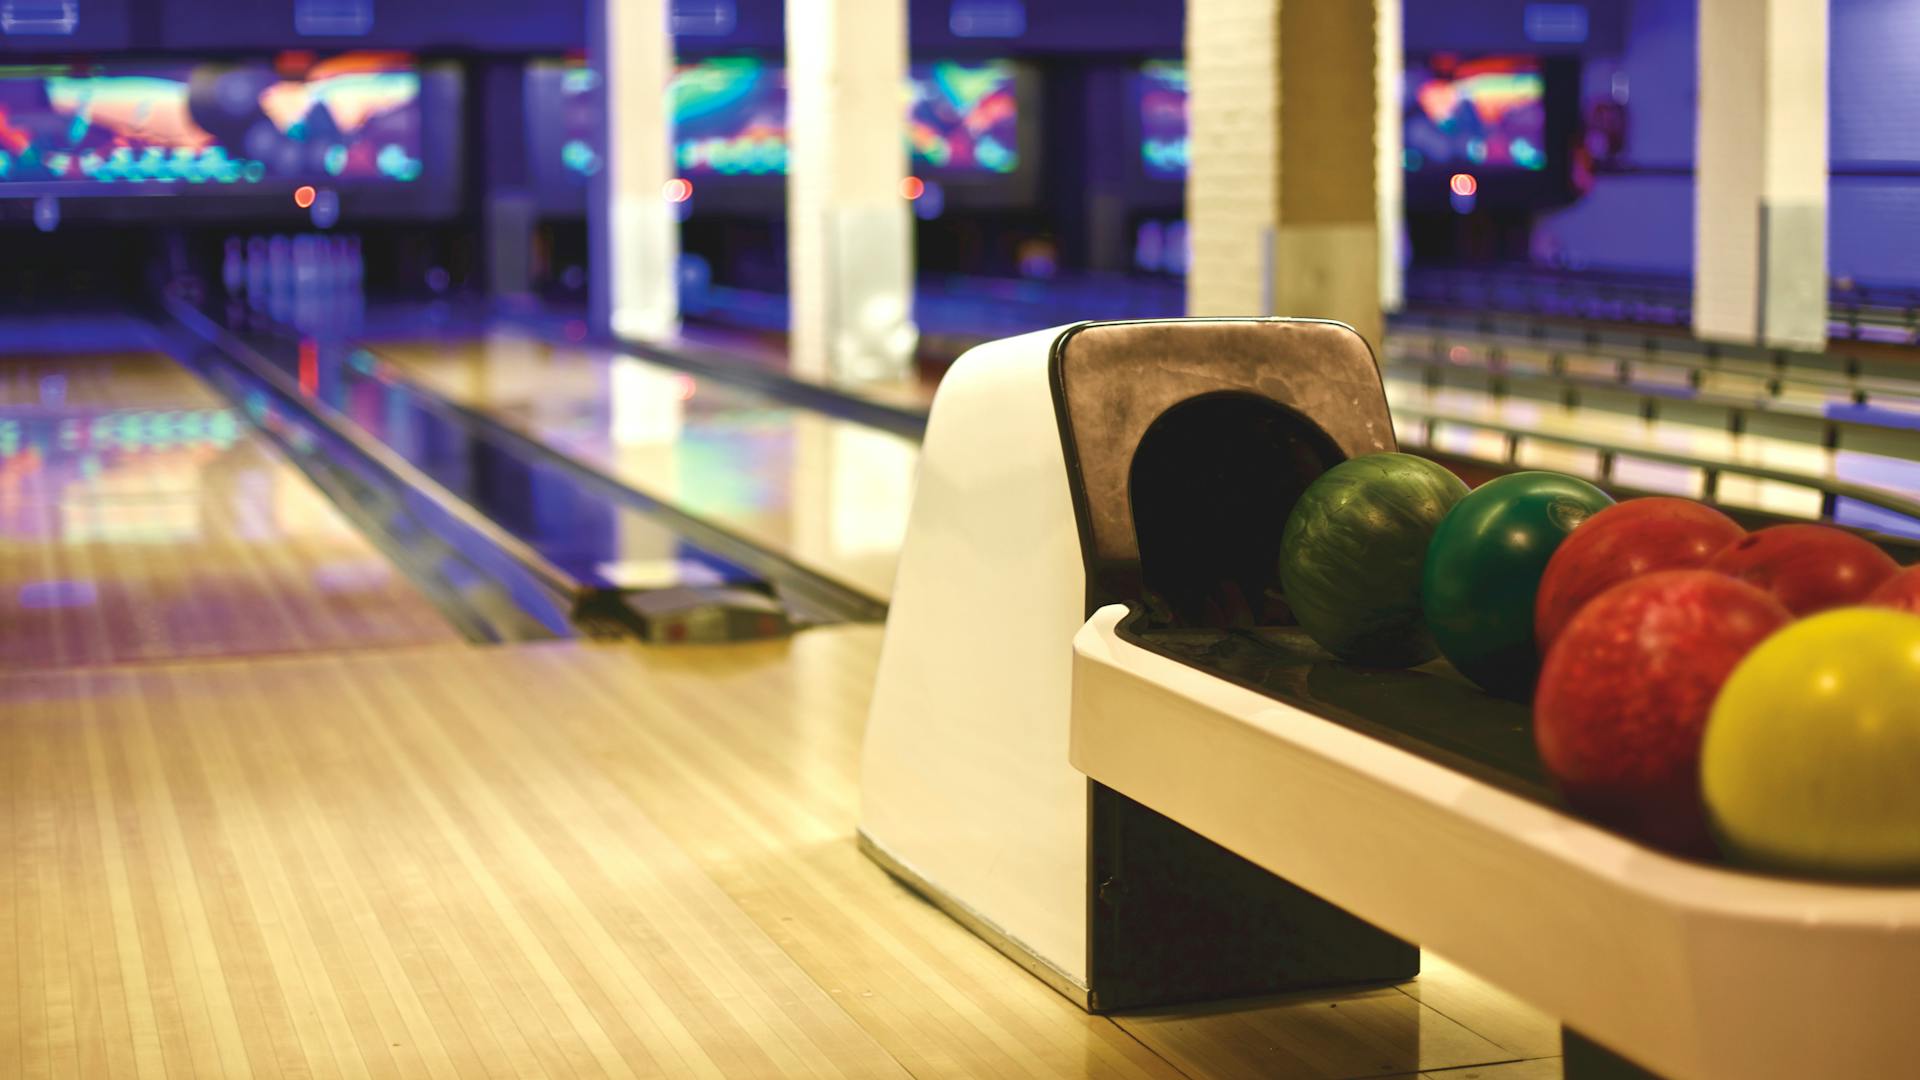 A bowling arcade | Source: Pexels